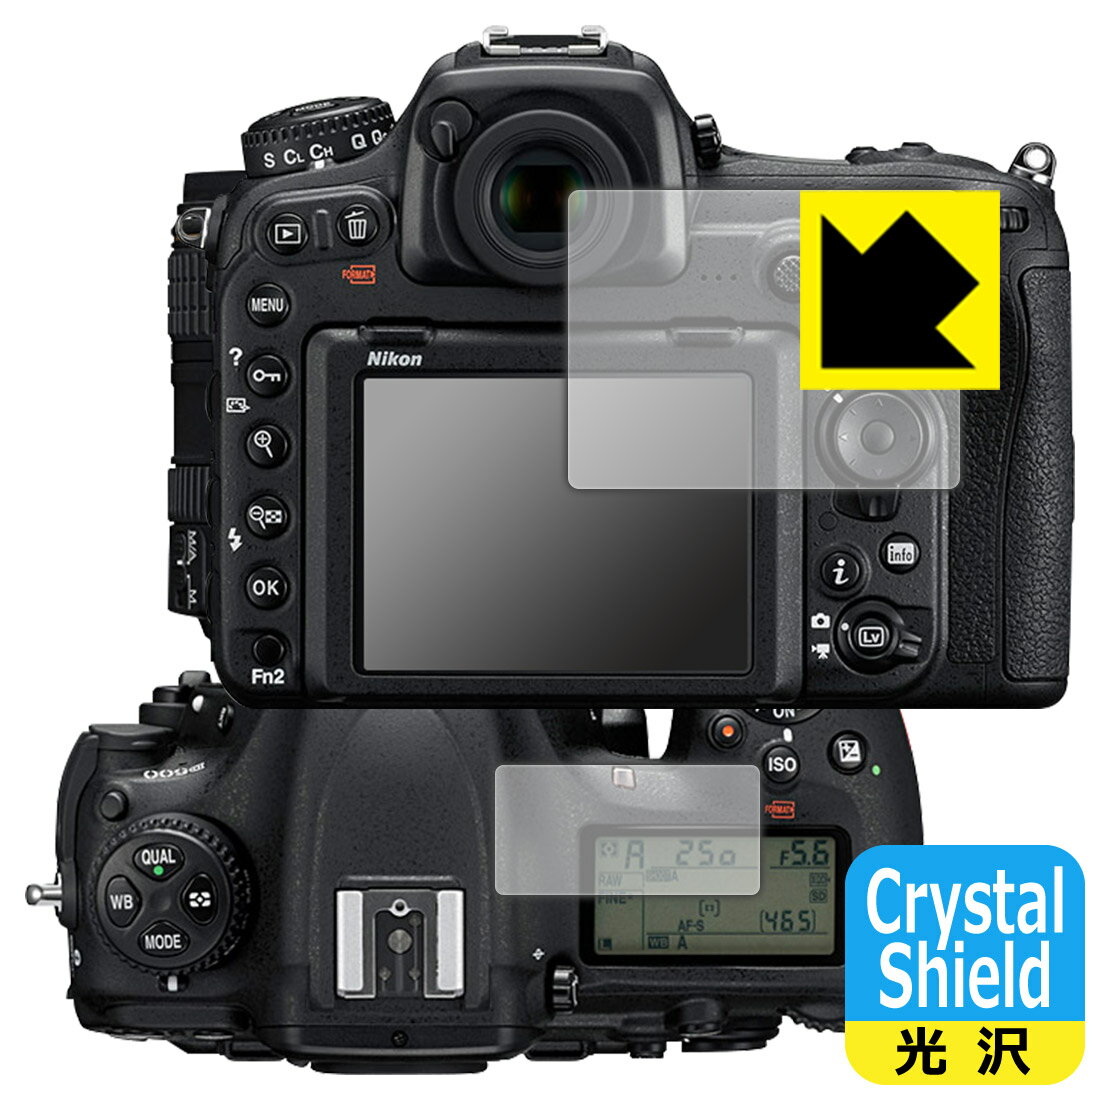 ●対応機種 : Nikon 一眼レフカメラ D500専用の商品です。●セット内容 : メイン画面用1枚・サブ画面用1枚●「Crystal Shield」は高い透明度と光沢感で、保護フィルムを貼っていないかのようなクリア感のある『光沢タイプの保護フィルム』●安心の国産素材を使用。日本国内の自社工場で製造し出荷しています。【ポスト投函送料無料】商品は【ポスト投函発送 (追跡可能メール便)】で発送します。お急ぎ、配達日時を指定されたい方は以下のクーポンを同時購入ください。【お急ぎ便クーポン】　プラス110円(税込)で速達扱いでの発送。お届けはポストへの投函となります。【配達日時指定クーポン】　プラス550円(税込)で配達日時を指定し、宅配便で発送させていただきます。【お急ぎ便クーポン】はこちらをクリック【配達日時指定クーポン】はこちらをクリック 　 貼っていることを意識させないほどの高い透明度に、高級感あふれる光沢・クリアな仕上げとなります。 動画視聴や画像編集など、機器本来の発色を重視したい方におすすめです。 ハードコート加工がされており、キズや擦れに強くなっています。簡単にキズがつかず長くご利用いただけます。 表面はフッ素コーティングがされており、皮脂や汚れがつきにくく、また、落ちやすくなっています。 指滑りもなめらかで、快適な使用感です。 油性マジックのインクもはじきますので簡単に拭き取れます。 接着面は気泡の入りにくい特殊な自己吸着タイプです。素材に柔軟性があり、貼り付け作業も簡単にできます。また、はがすときにガラス製フィルムのように割れてしまうことはありません。 貼り直しが何度でもできるので、正しい位置へ貼り付けられるまでやり直すことができます。 抗菌加工によりフィルム表面の菌の繁殖を抑えることができます。清潔な画面を保ちたい方におすすめです。 ※抗菌率99.9％ / JIS Z2801 抗菌性試験方法による評価 最高級グレードの国産素材を日本国内の弊社工場で加工している完全な Made in Japan です。安心の品質をお届けします。 使用上の注意 ●本製品は機器の画面をキズなどから保護するフィルムです。他の目的にはご使用にならないでください。 ●本製品は液晶保護および機器本体を完全に保護することを保証するものではありません。機器の破損、損傷、故障、その他損害につきましては一切の責任を負いかねます。 ●製品の性質上、画面操作の反応が変化したり、表示等が変化して見える場合がございます。 ●貼り付け作業時の失敗(位置ズレ、汚れ、ゆがみ、折れ、気泡など)および取り外し作業時の破損、損傷などについては、一切の責任を負いかねます。 ●水に濡れた状態でのご使用は吸着力の低下などにより、保護フィルムがはがれてしまう場合がございます。防水対応の機器でご使用の場合はご注意ください。 ●アルコール類やその他薬剤を本製品に付着させないでください。表面のコーティングや吸着面が変質するおそれがあります。 ●品質向上のため、仕様などを予告なく変更する場合がございますので、予めご了承ください。